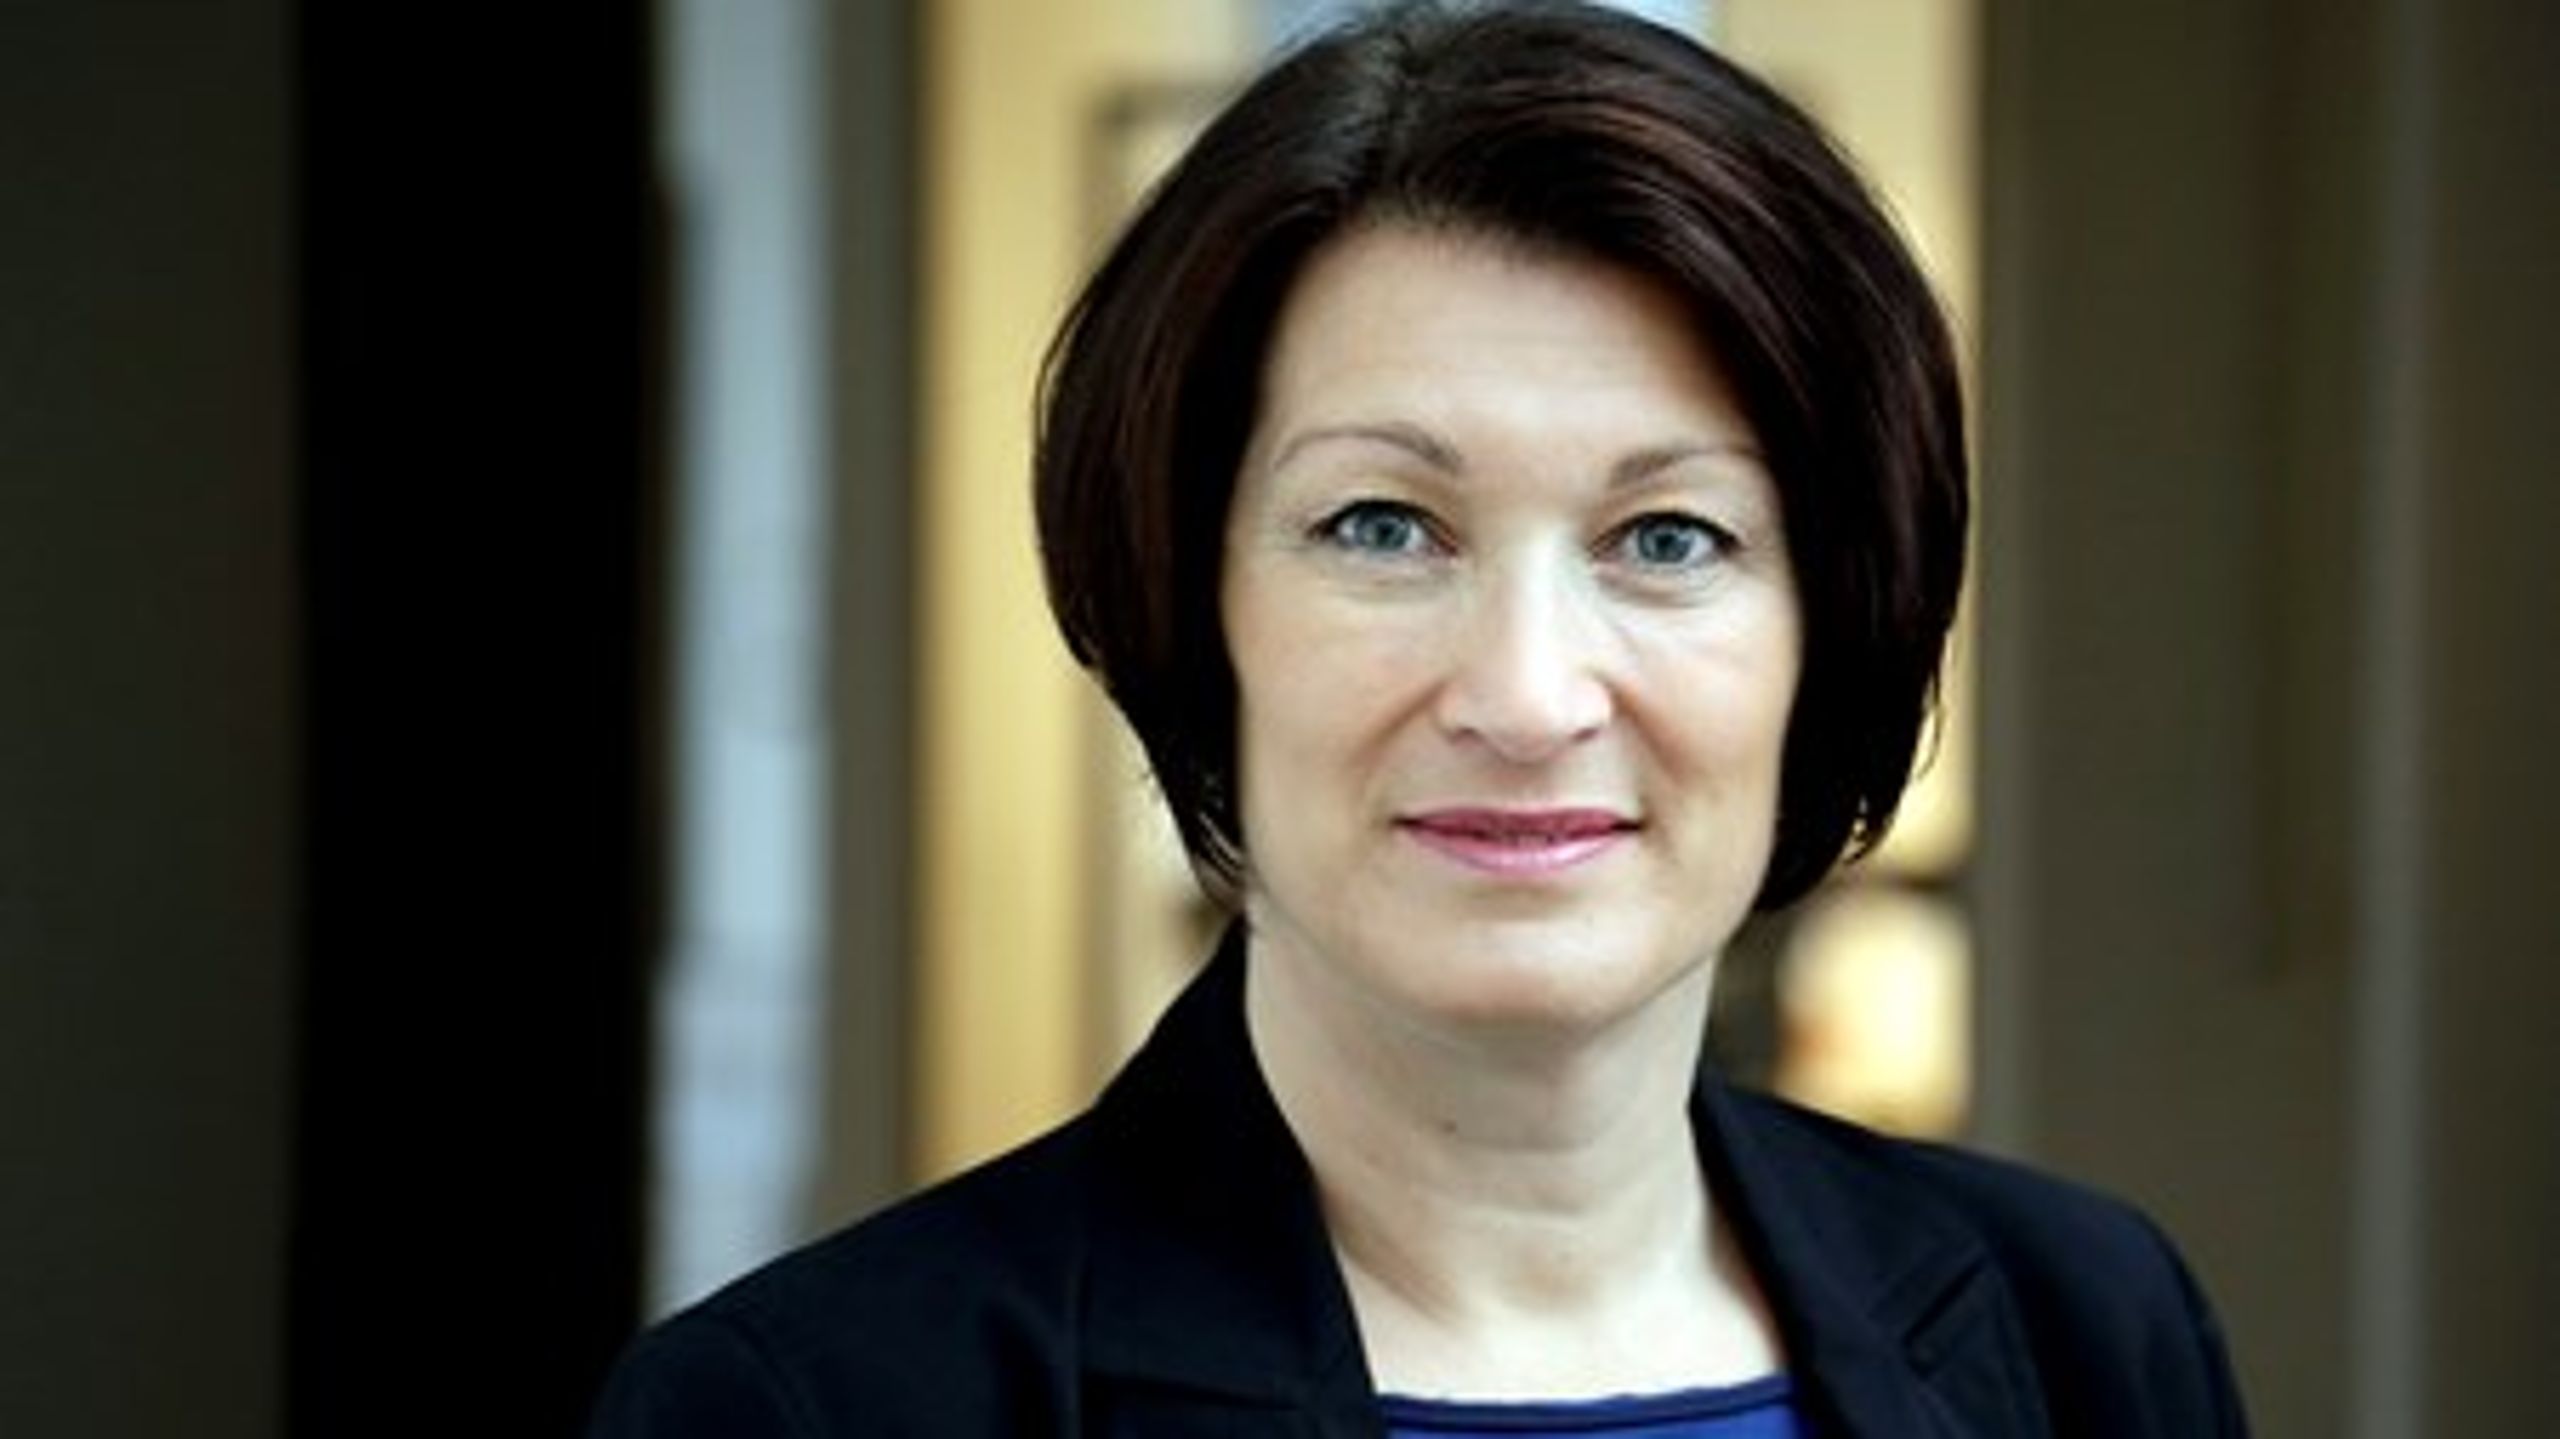 Siden april&nbsp;2013 har Tina Lambrecht været formand for Danske Fysioterapeuter, men blev i 2012 konstitueret formand, da Johnny Kuhr forlod posten på grund af sygdom.<br>